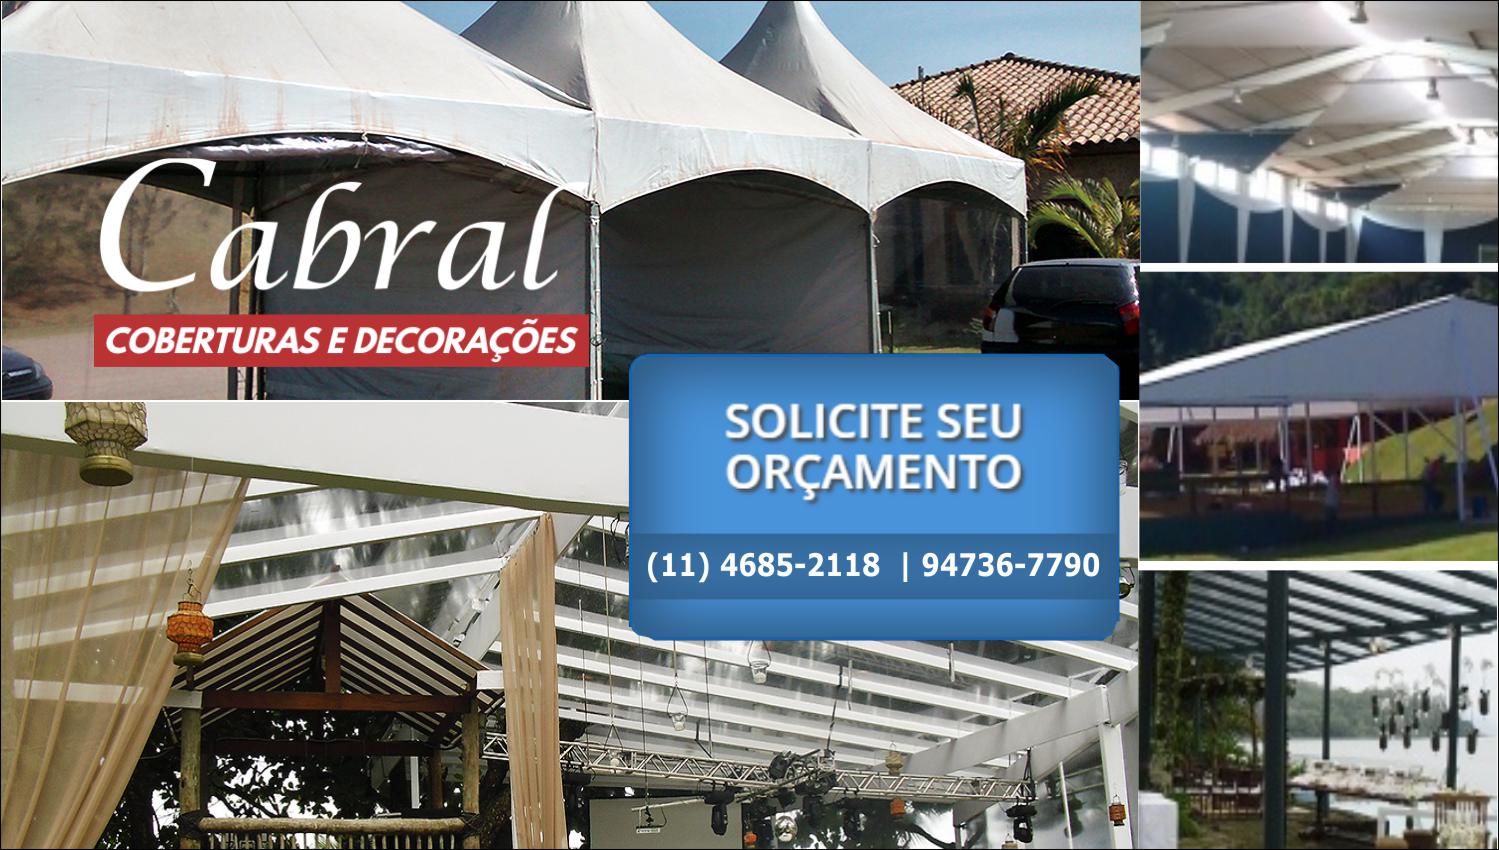 Empresa de Aluguel de Coberturas Para Festas e Eventos em São Paulo e Região |Cabral Coberturas